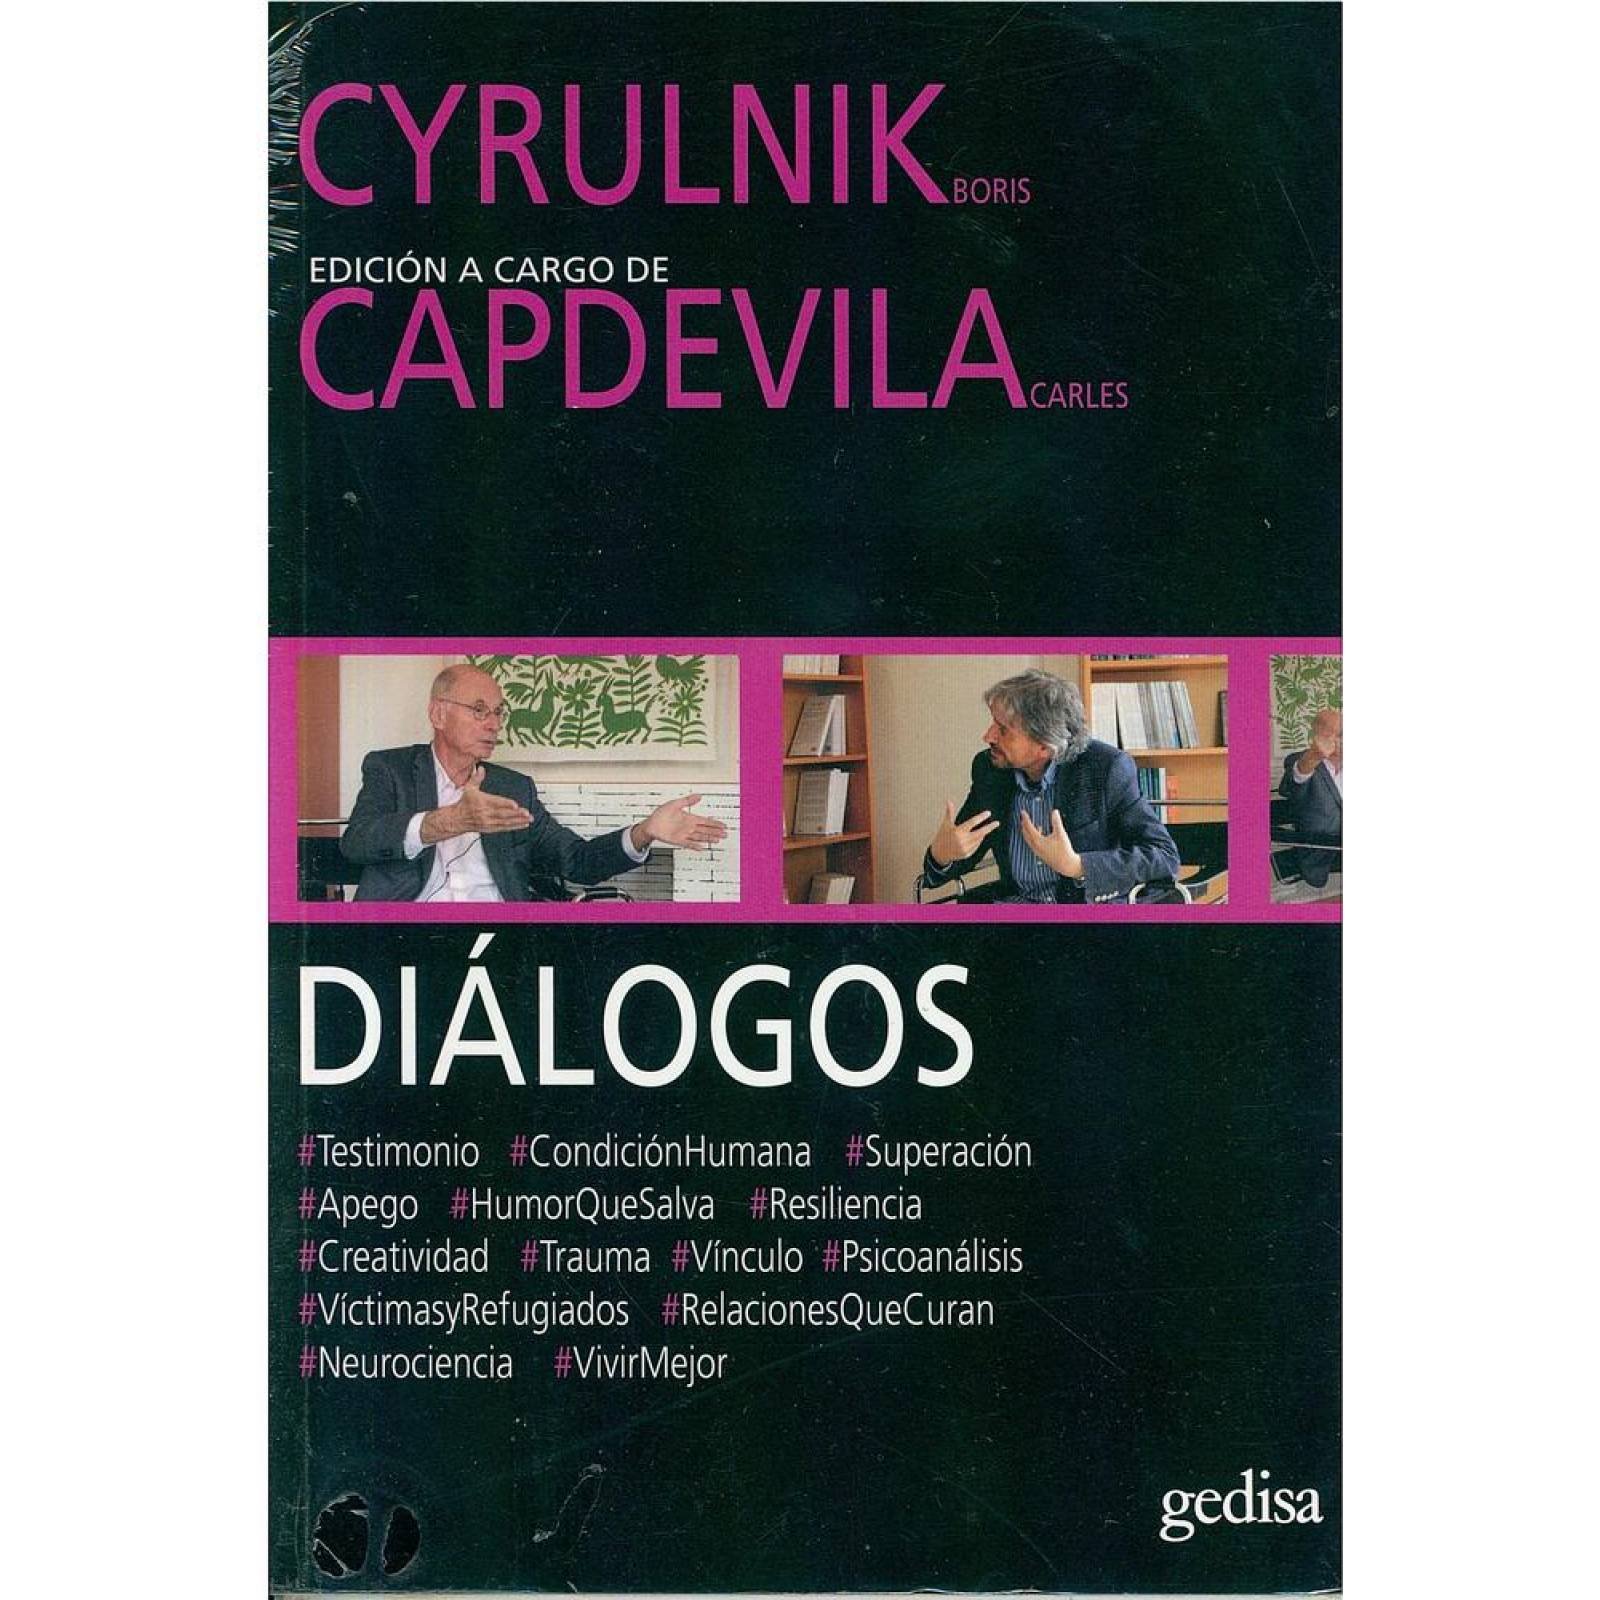 Diálogos. Cyrulnik Boris y Capdevila Carles 